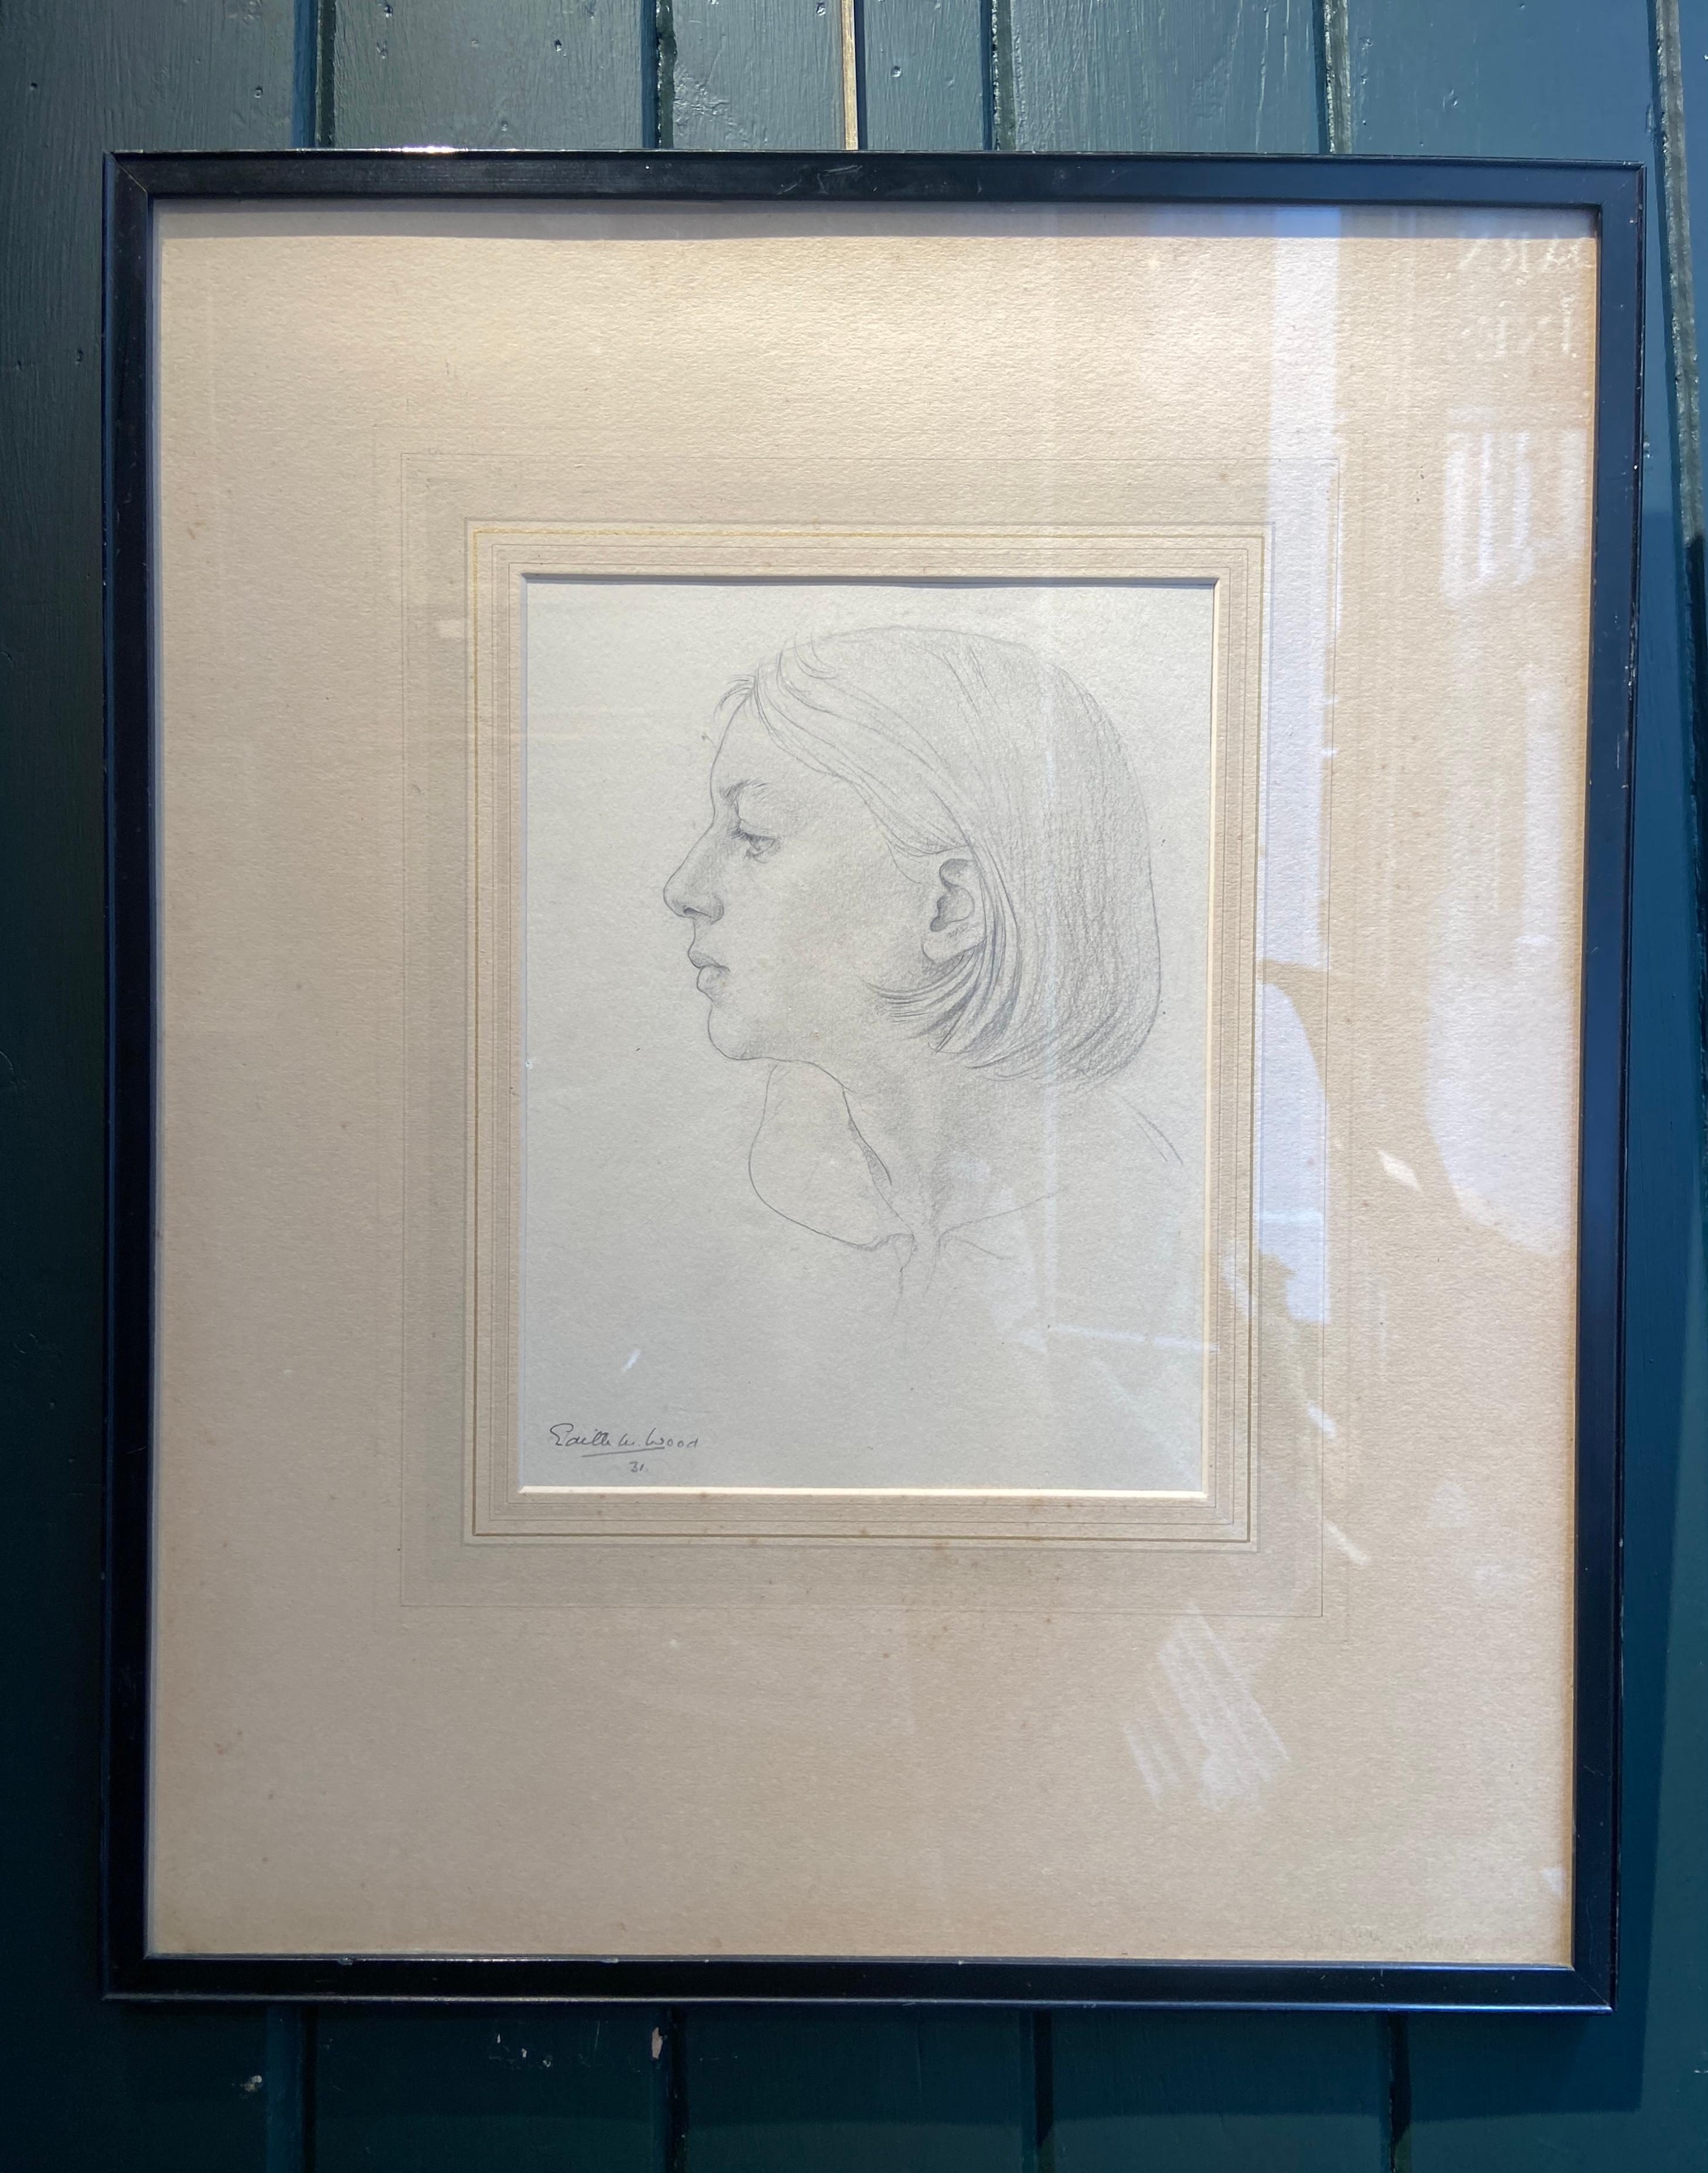 Porträtstudie, Graphitkunstwerk des 20. Jahrhunderts, weibliche Künstlerin – Art von Edith W. Wood